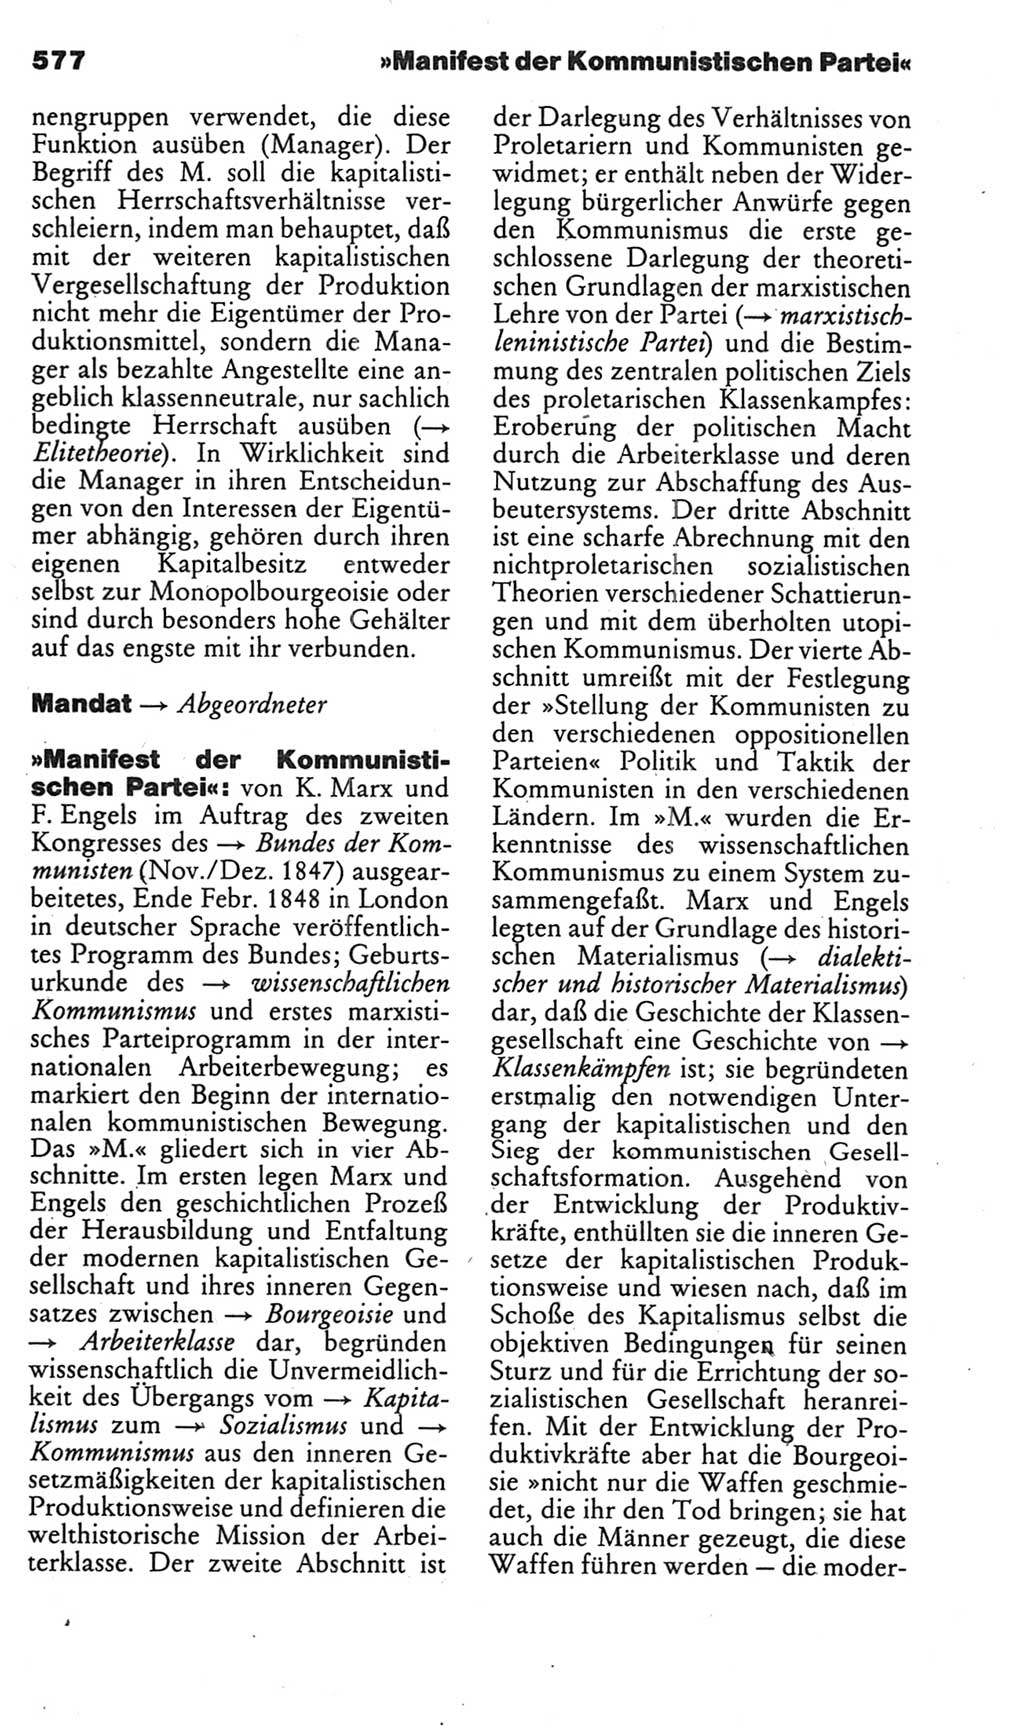 Kleines politisches Wörterbuch [Deutsche Demokratische Republik (DDR)] 1985, Seite 577 (Kl. pol. Wb. DDR 1985, S. 577)